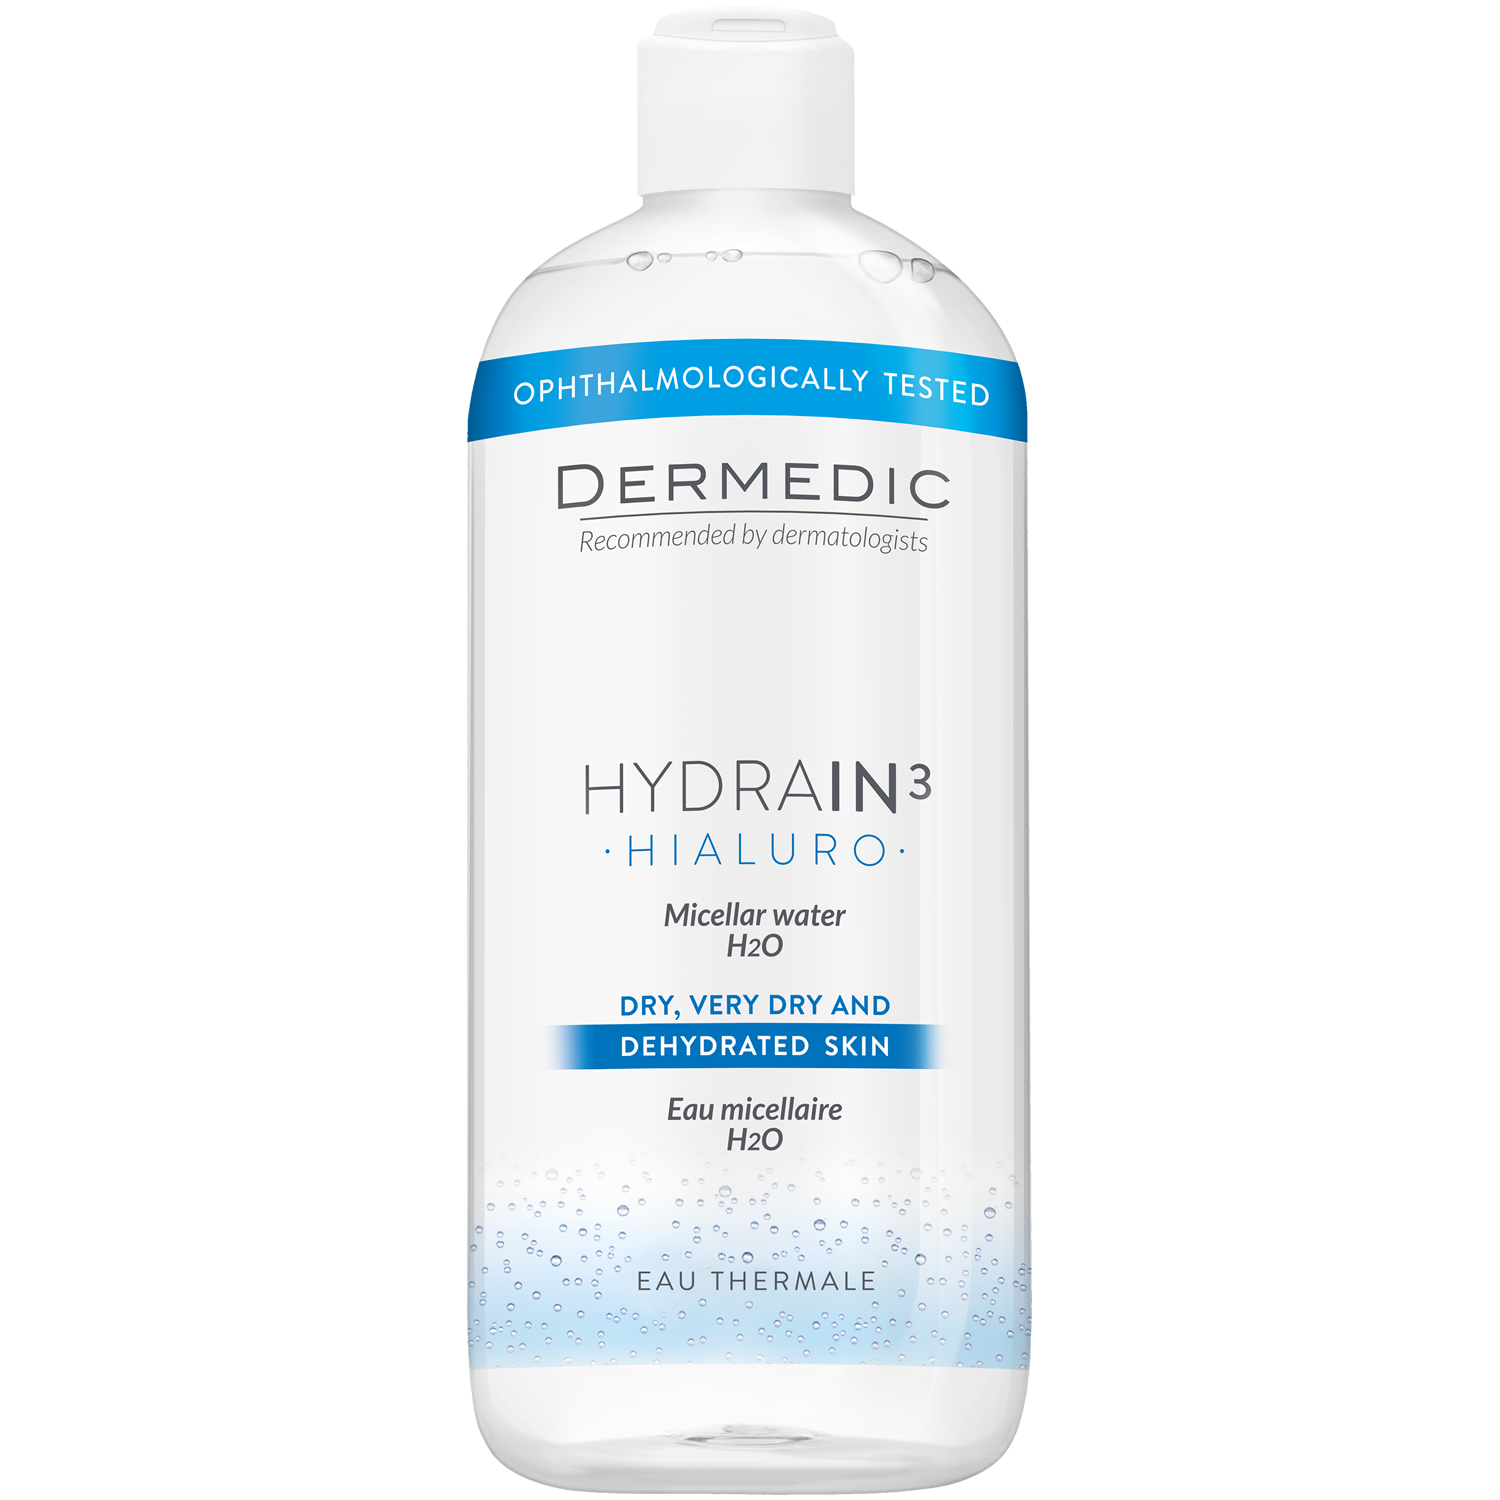 Dermedic Hydrain3 Hialuro мицеллярная вода H2O для лица, 500 мл мицеллярная вода dermedic hydrain3 hialuro h2o 100 мл